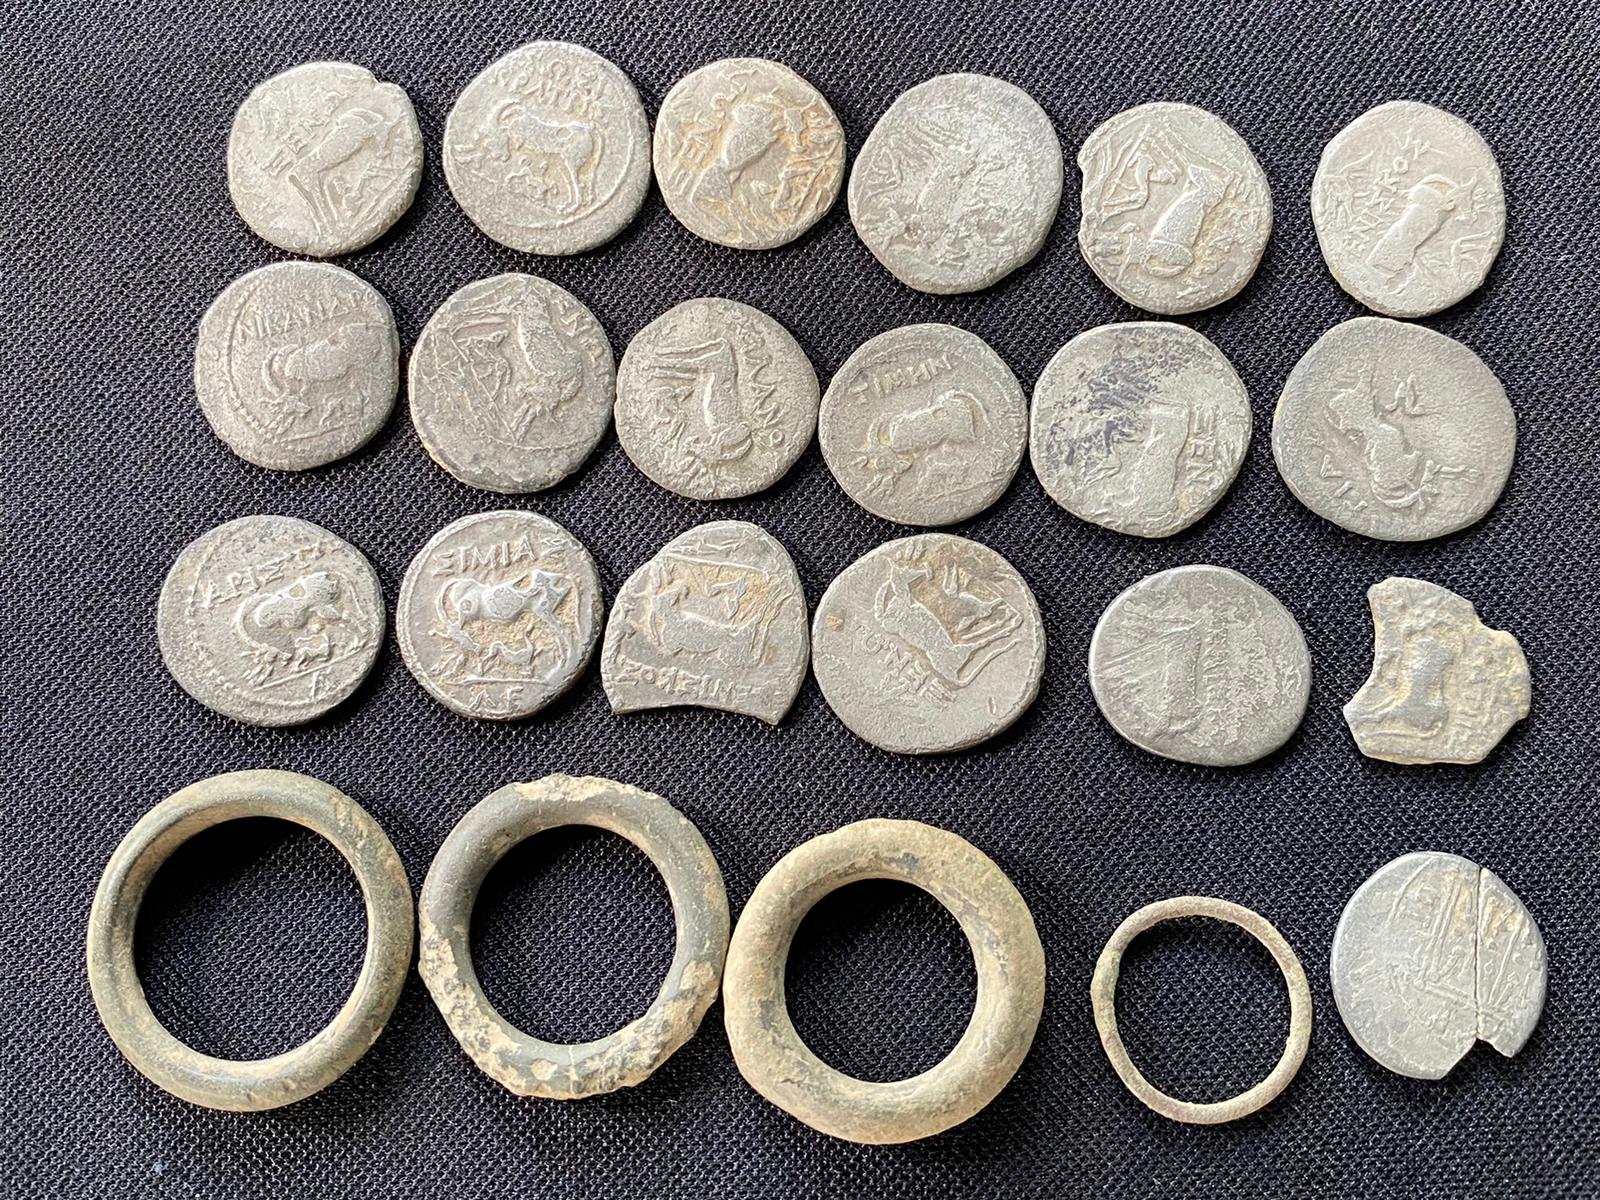 Ezüst pénzérmék az első századból | Fotók: Bihar Megyei Prefektúra Kancelláriahivatala